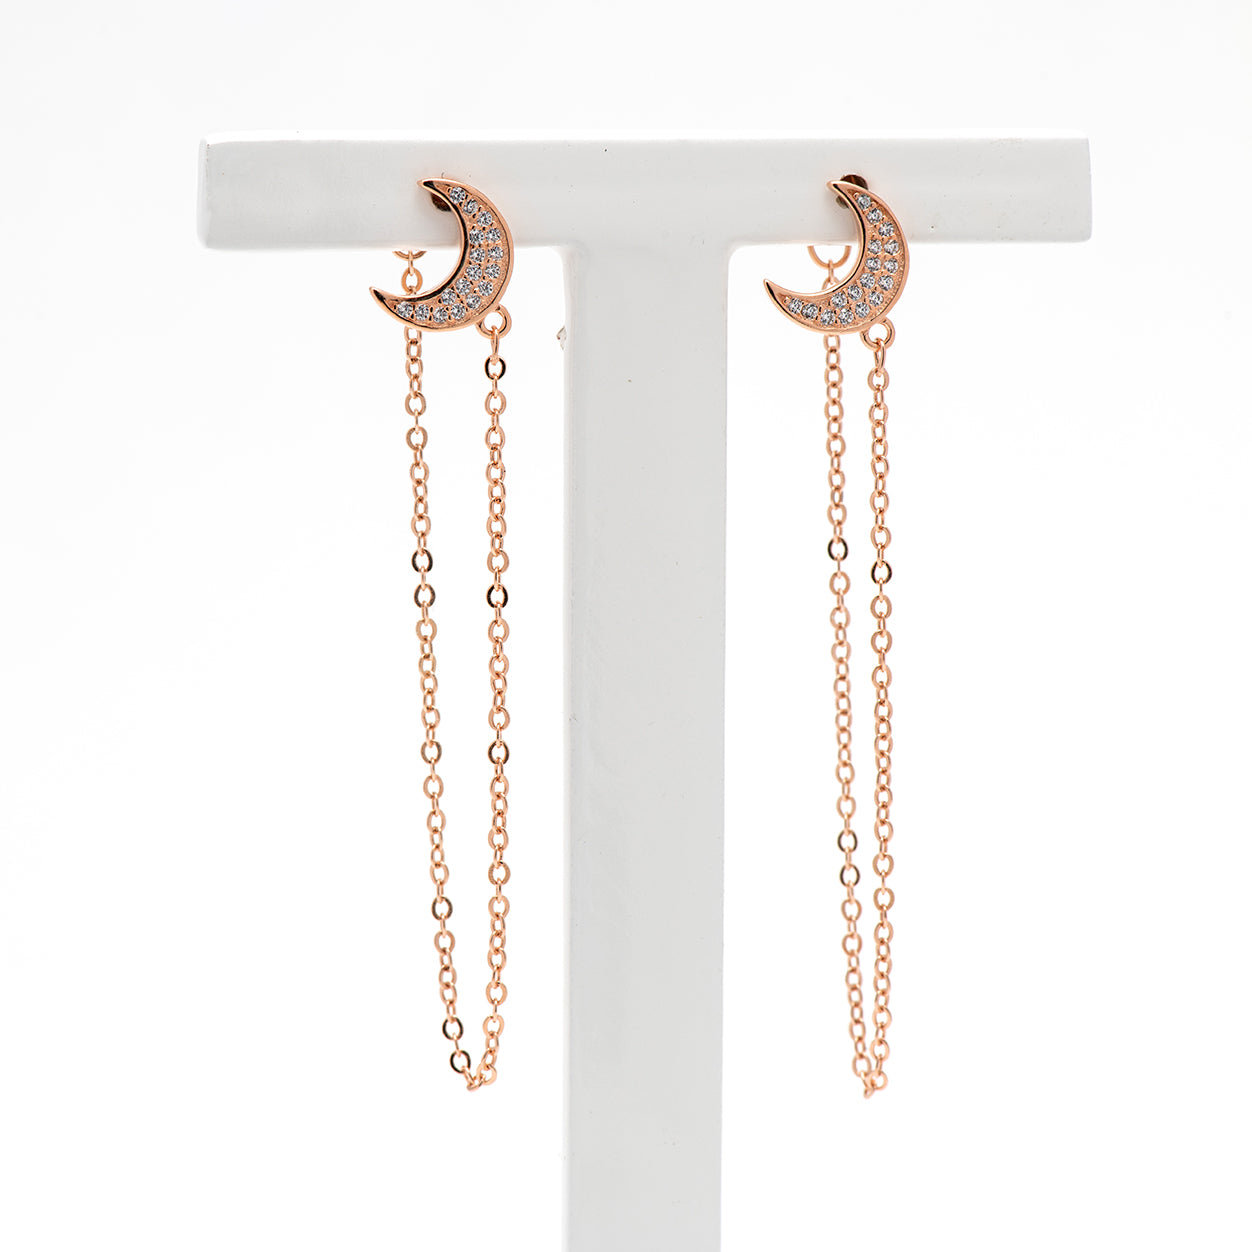 DK-925-120 earrings in rose gold